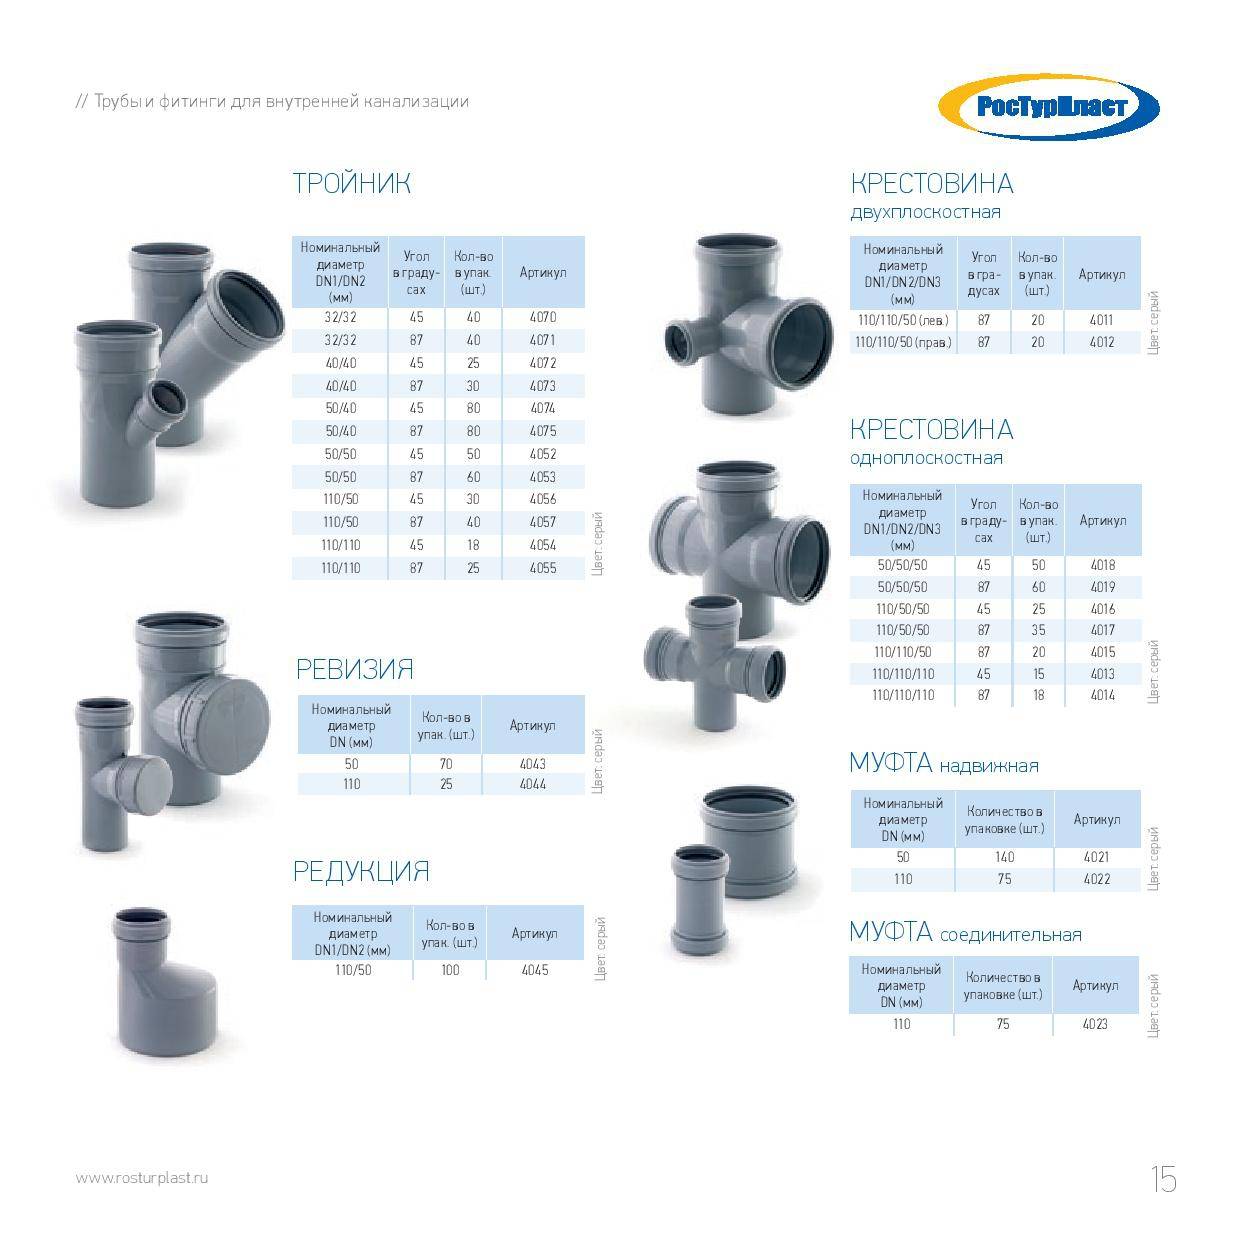 Канализационные фитинги: модели размером 110 мм для наружных и внутренних труб канализации